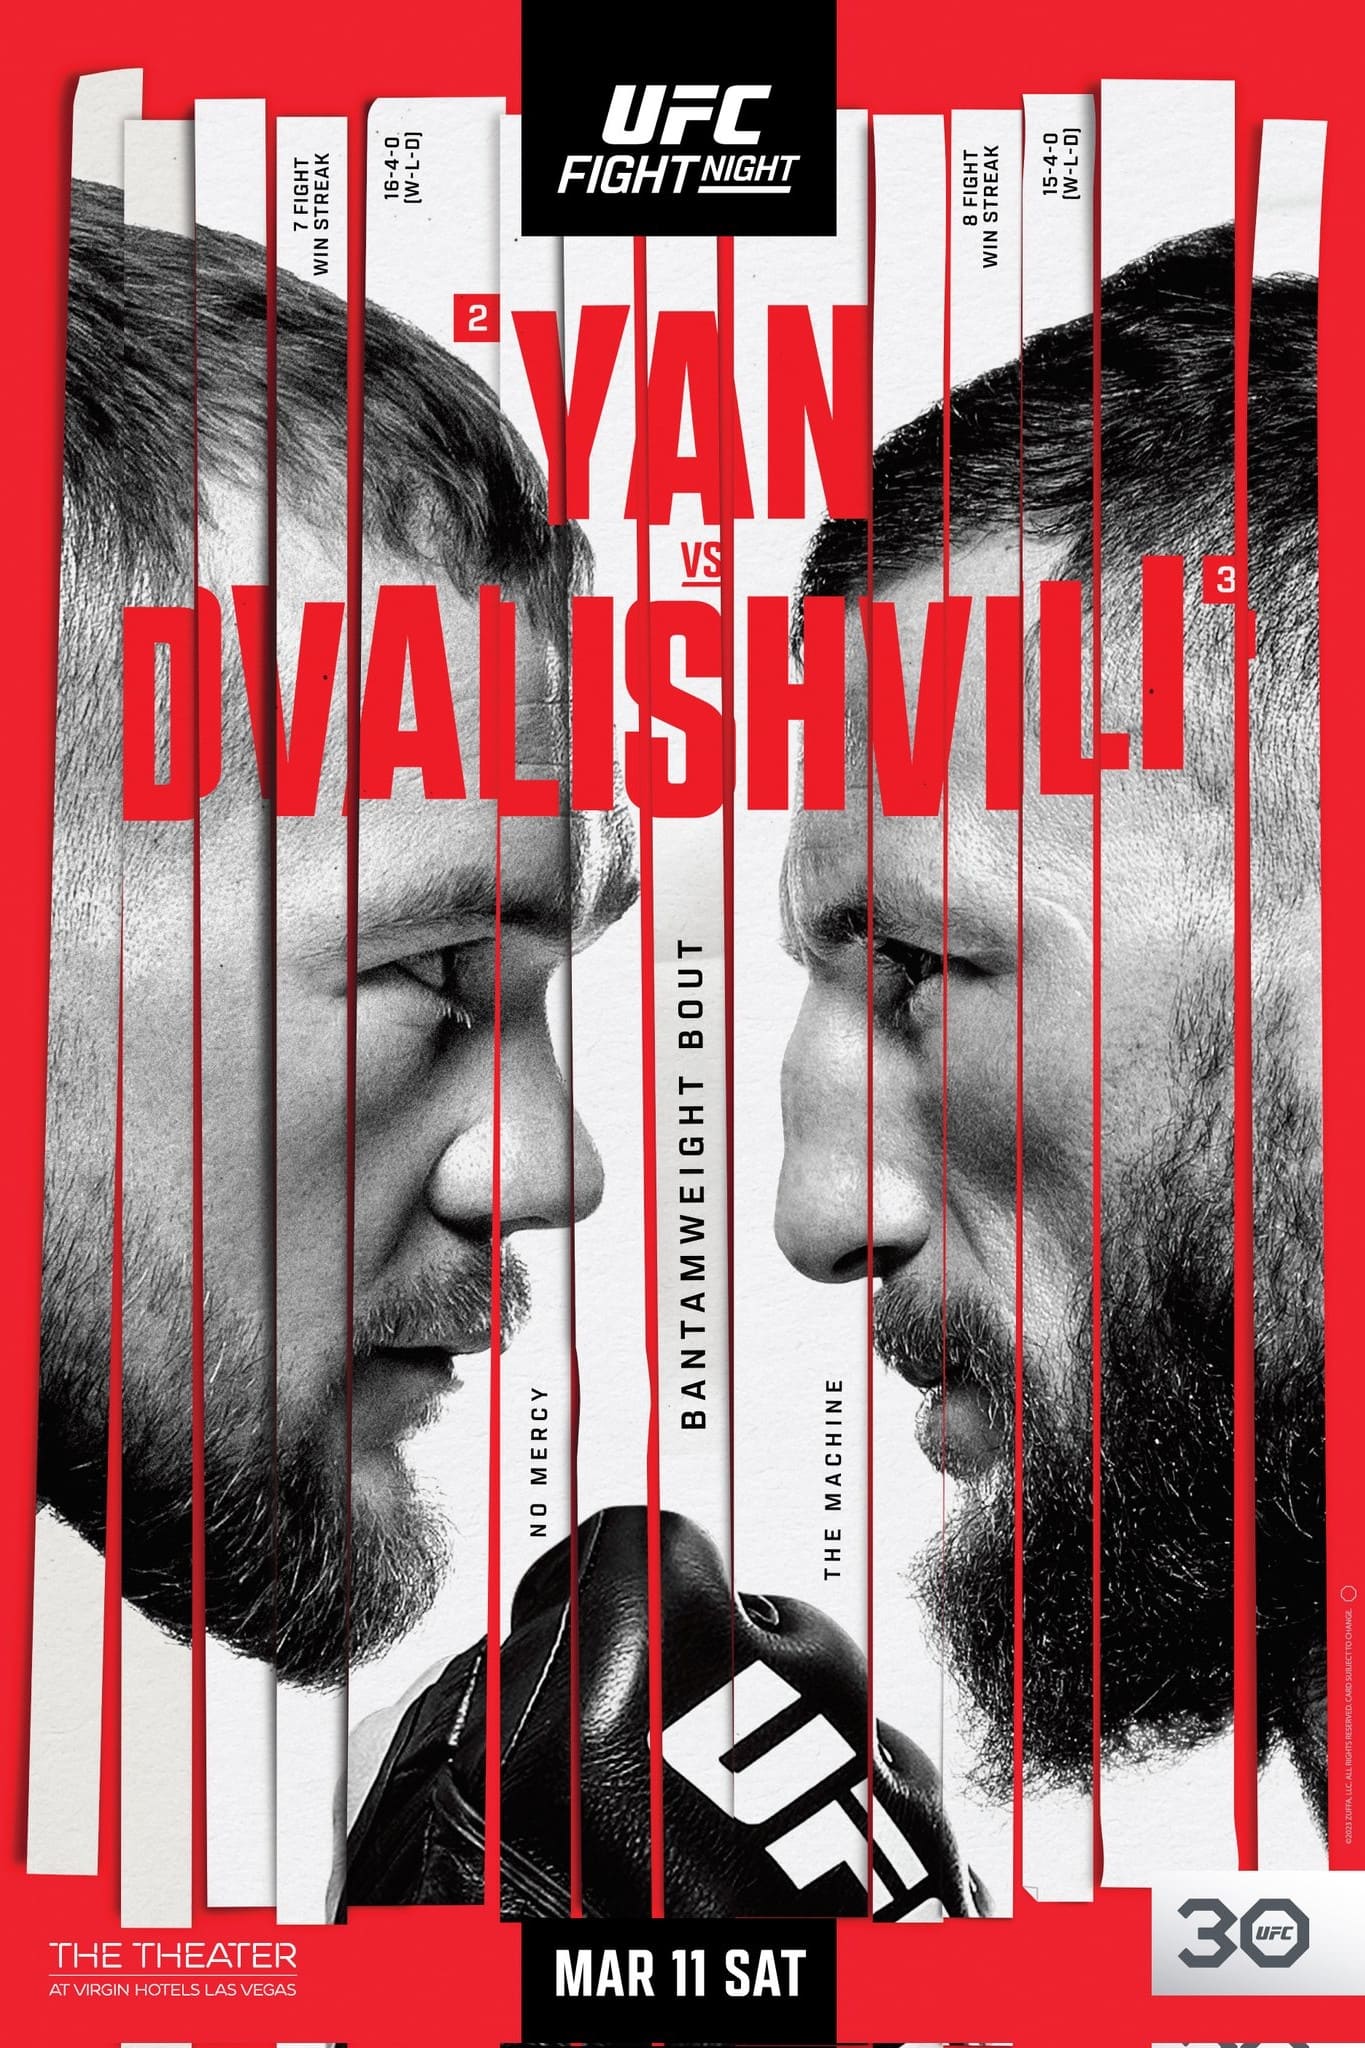 UFC Fight Night 221: Yan vs. Dvalishvili